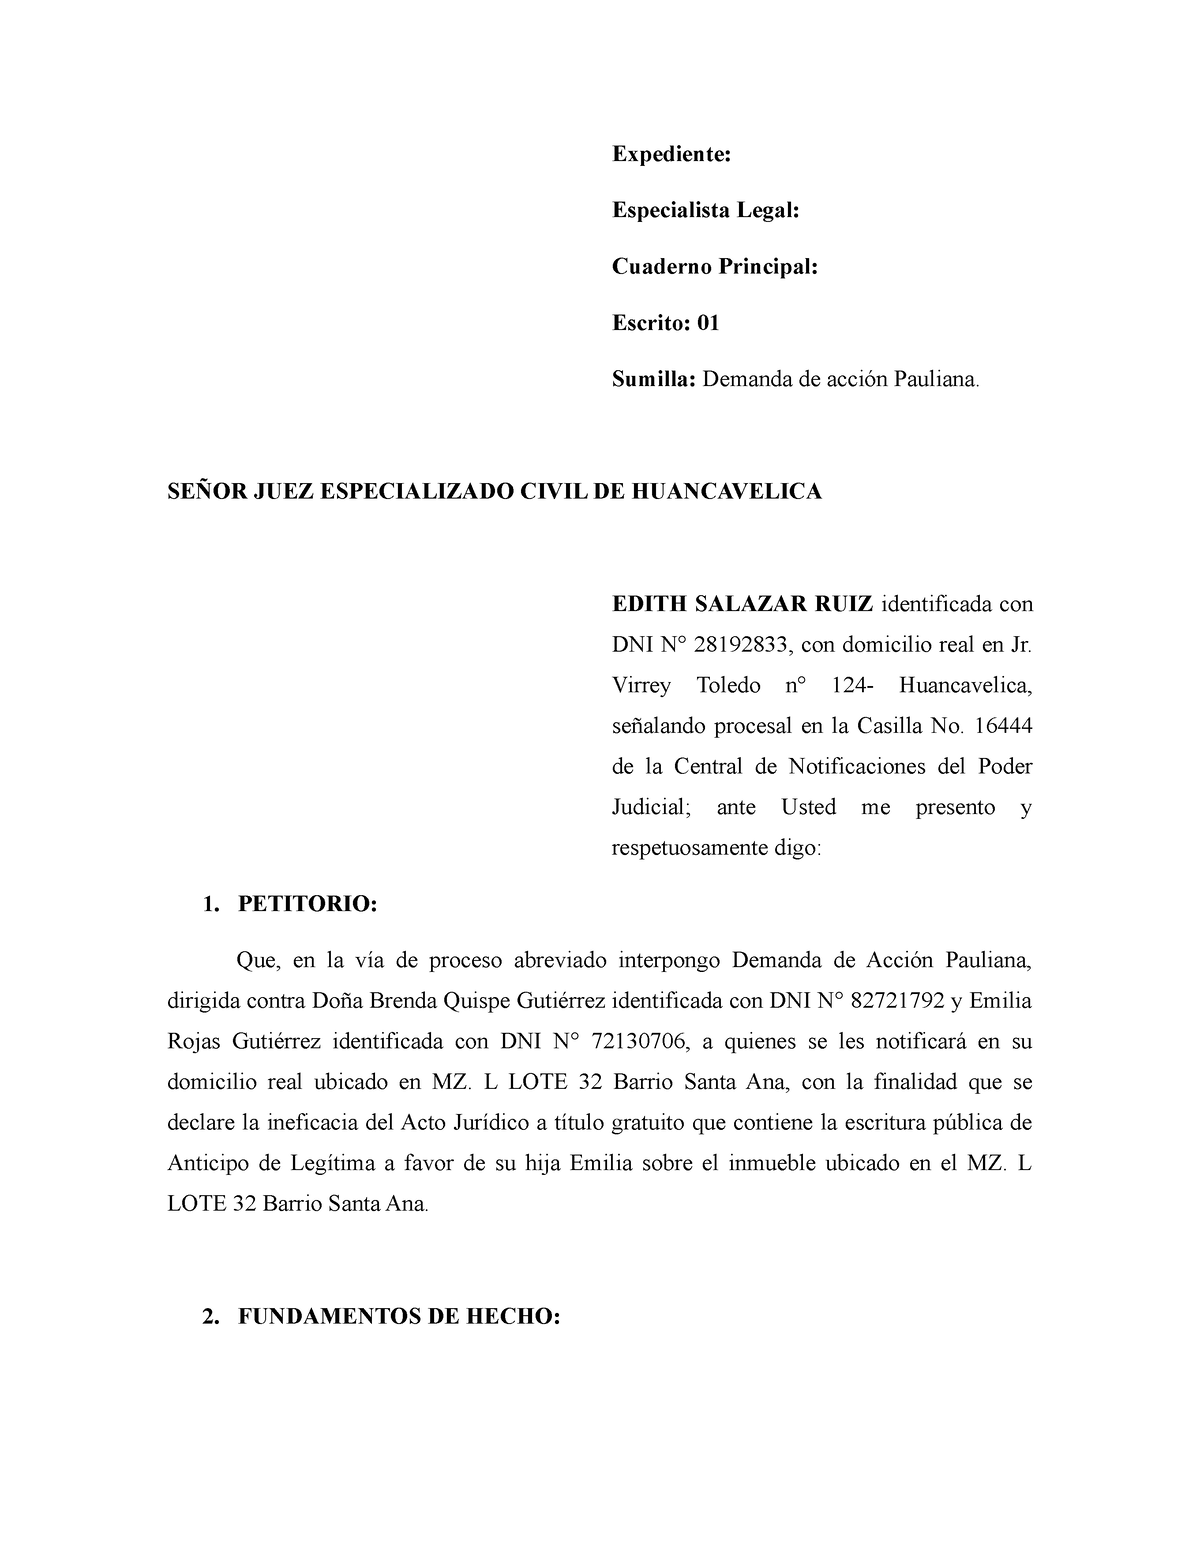 Demanda De Accion Pauliana Expediente Especialista Legal Cuaderno Principal Escrito 01 1676